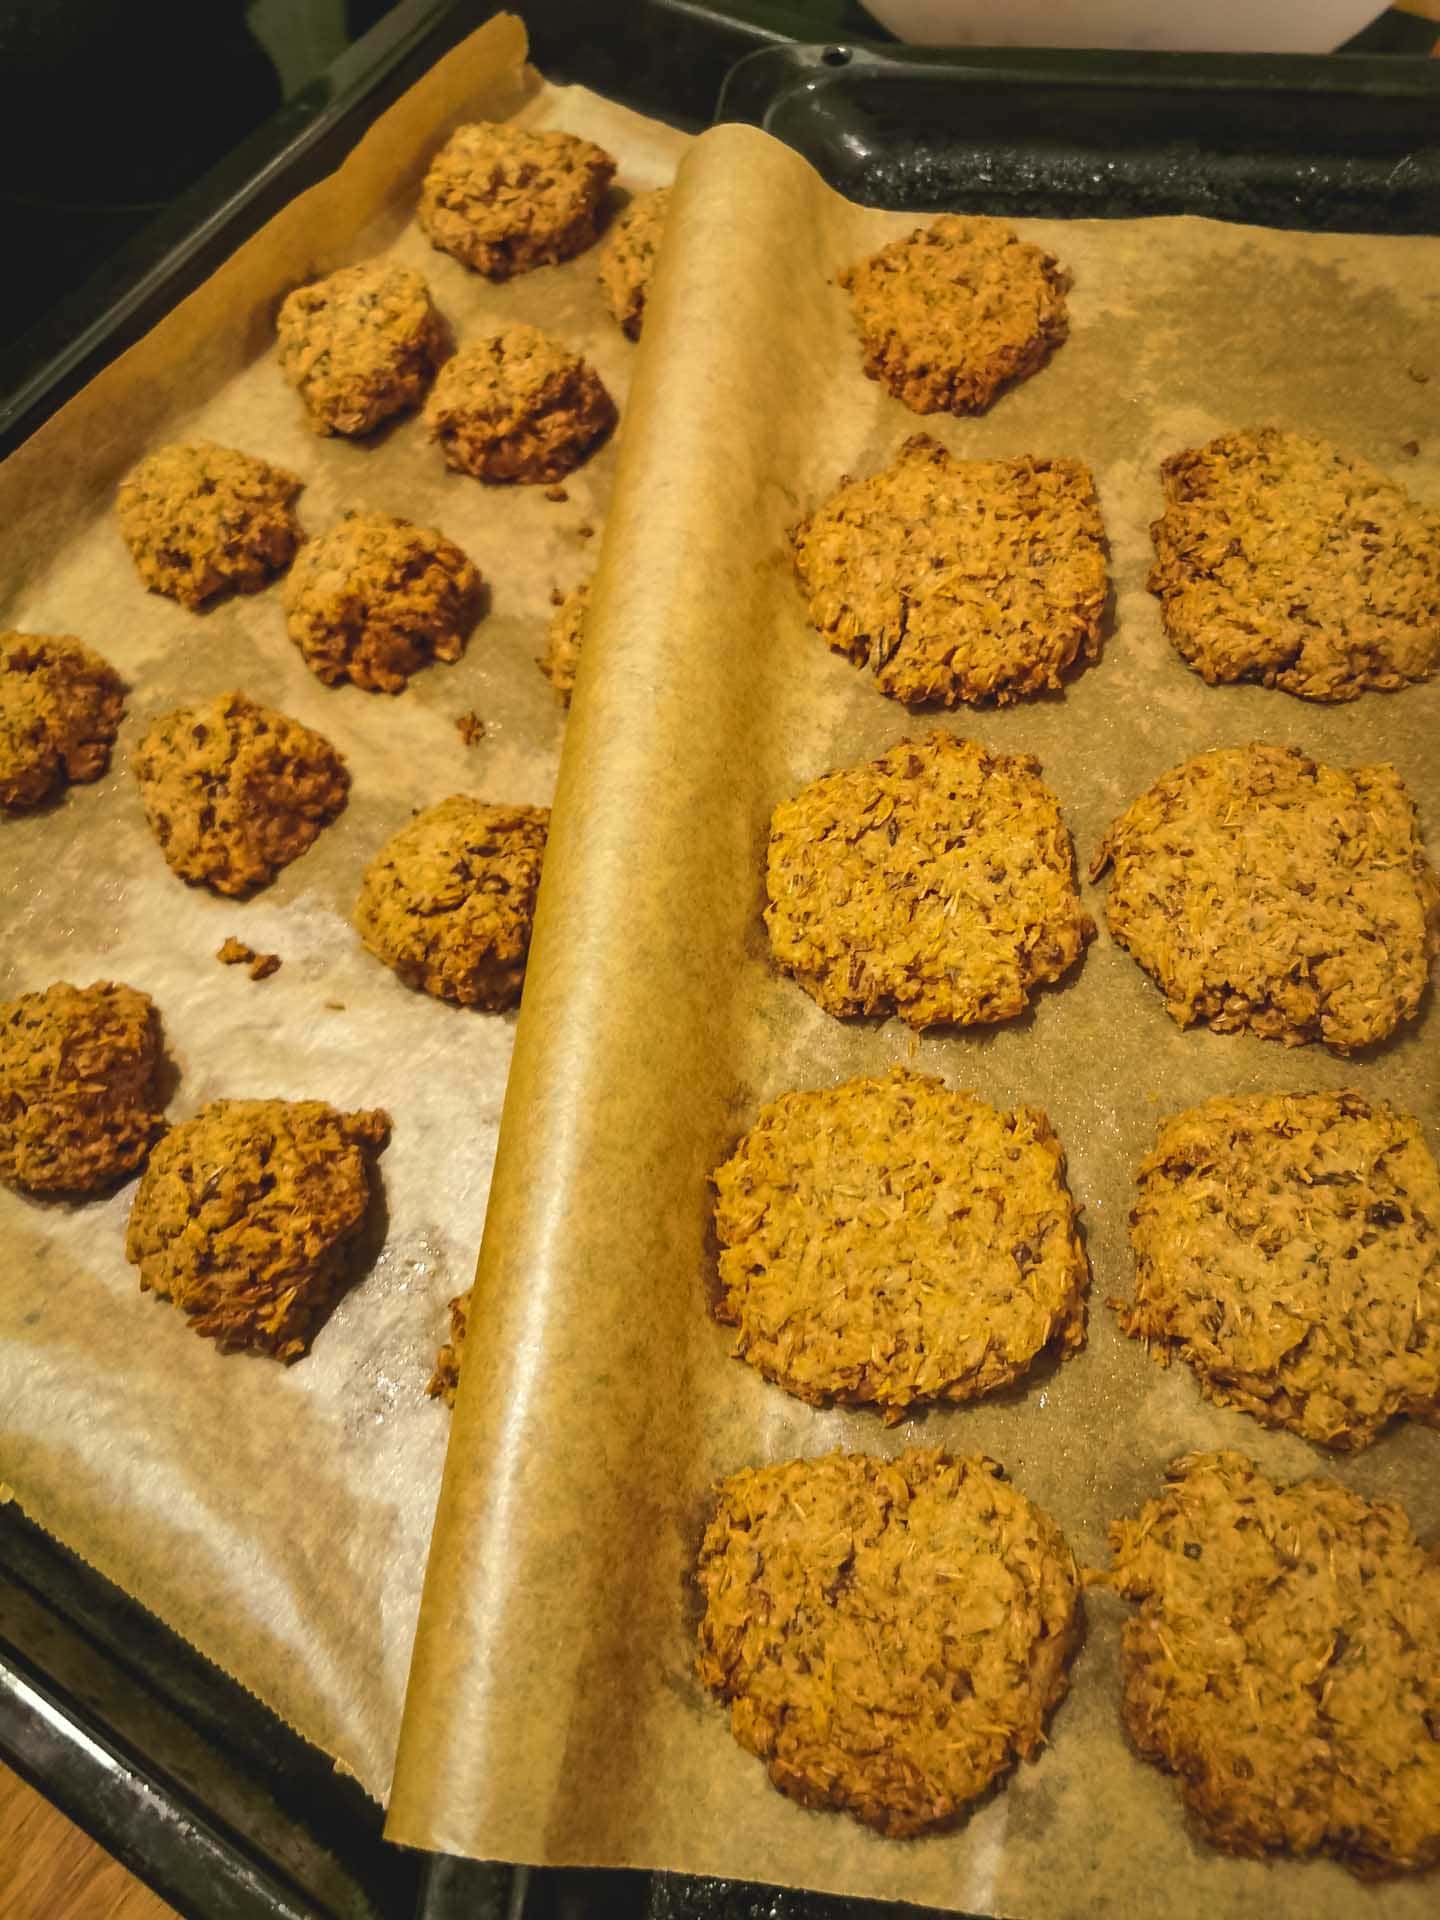 Mit dem Treber kann man leckere Kekse backen. Der würde sonst nach dem Brauen im Müll landen